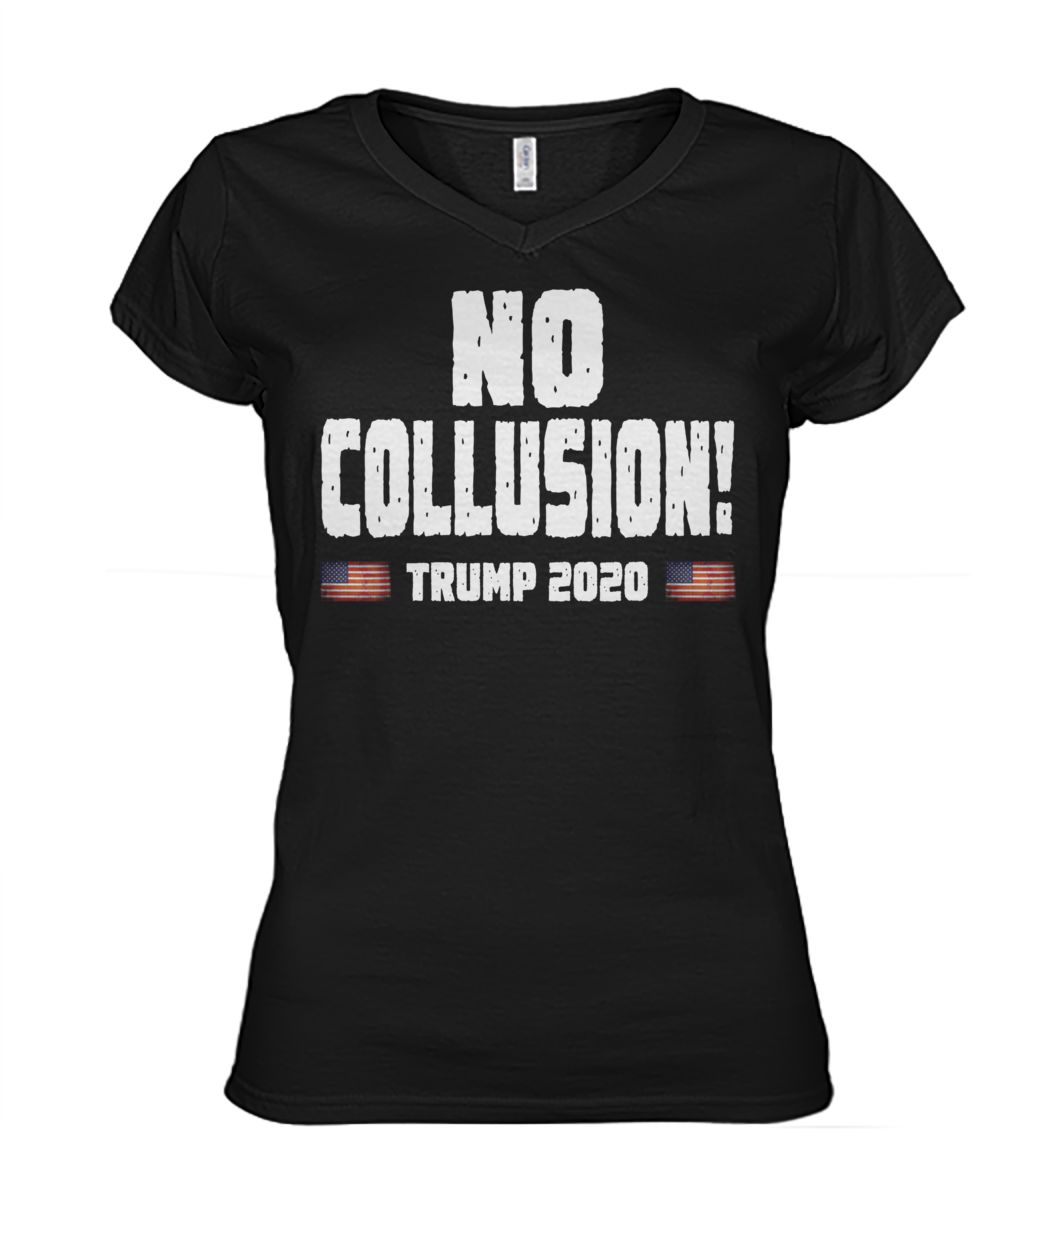 No collusion trump 2020 women's v-neck